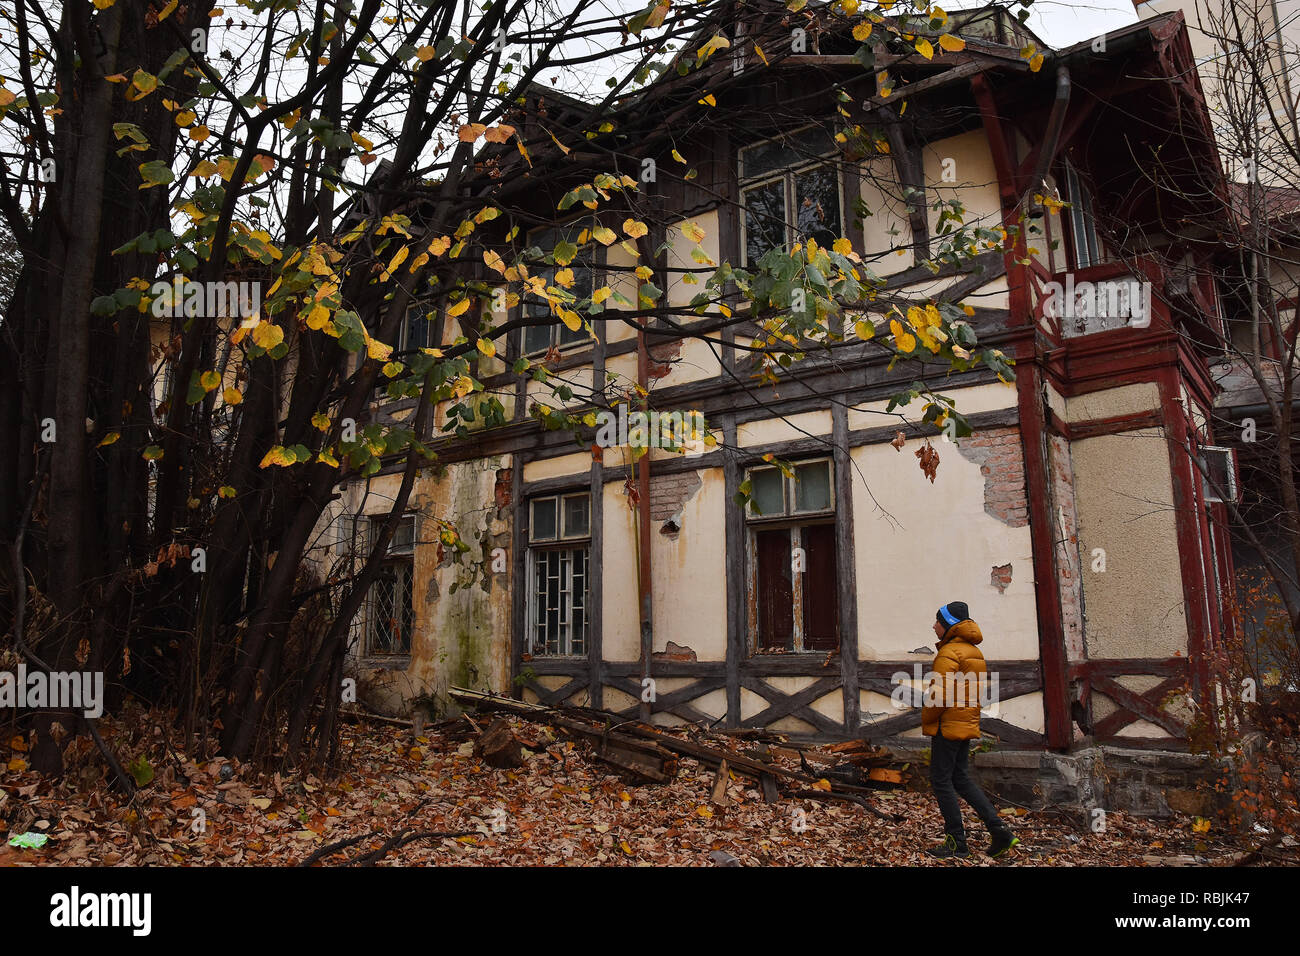 SINAIA, ROMANIA - NOVEMBER 7, 2018. Sinaia documentary project. Abandoned house in the center of Sinaia, Prahova Valley. Stock Photo